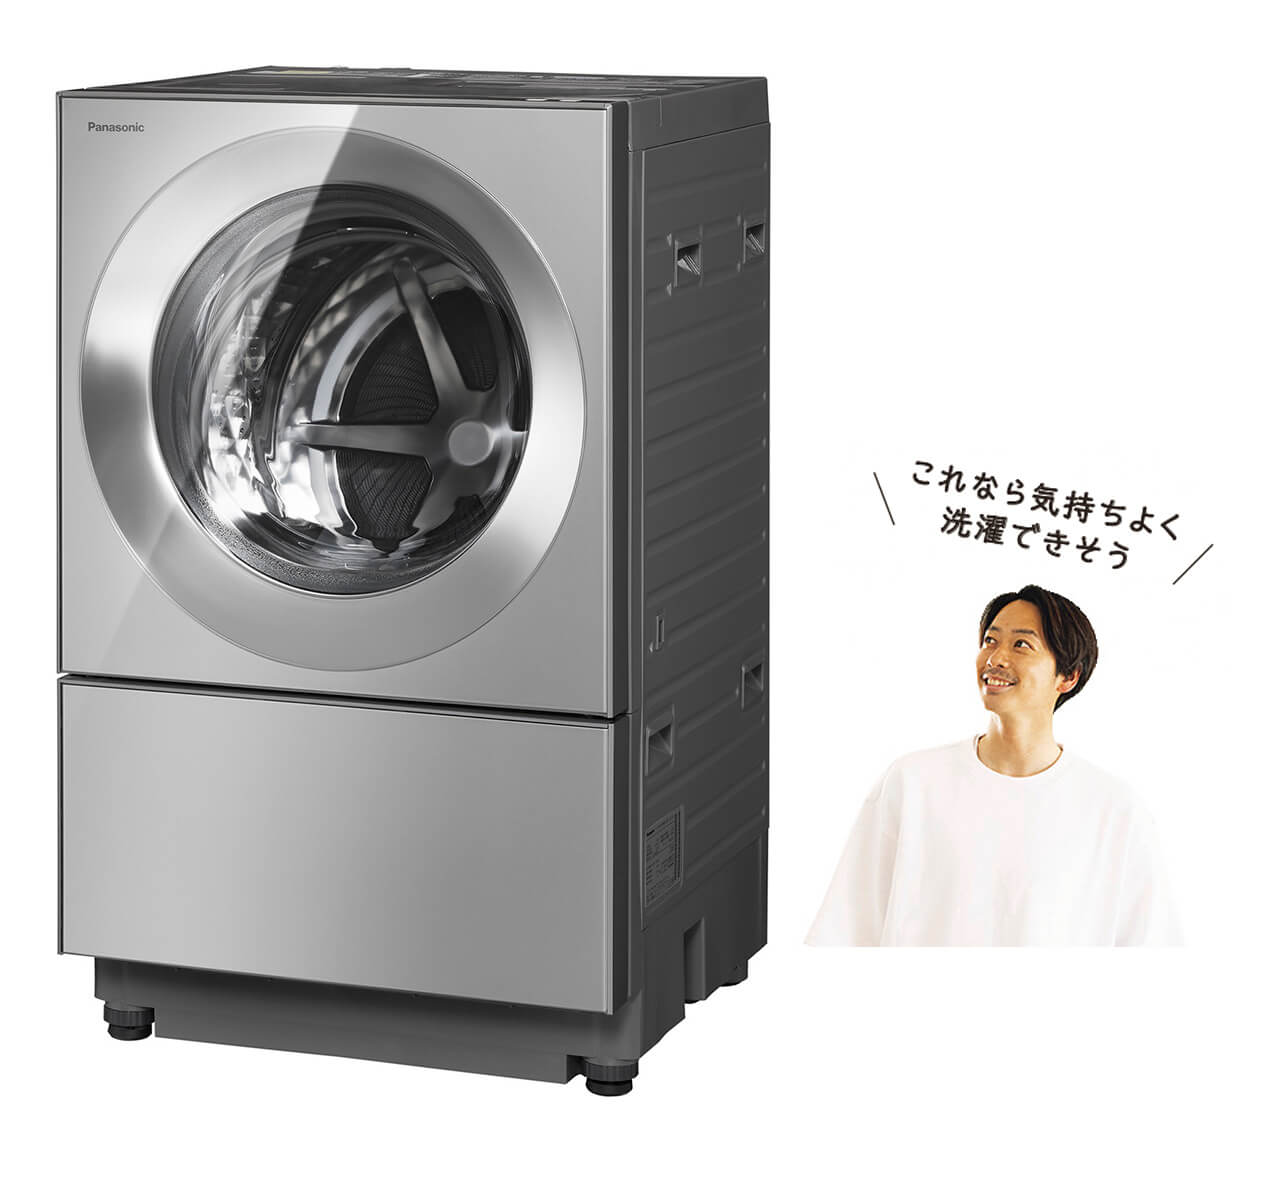 清家大葵さん／これなら気持ちよく 洗濯できそう／ドラム式洗濯乾燥機「Cuble」NA-VG2500／パナソニック￥349800（編集部調べ）